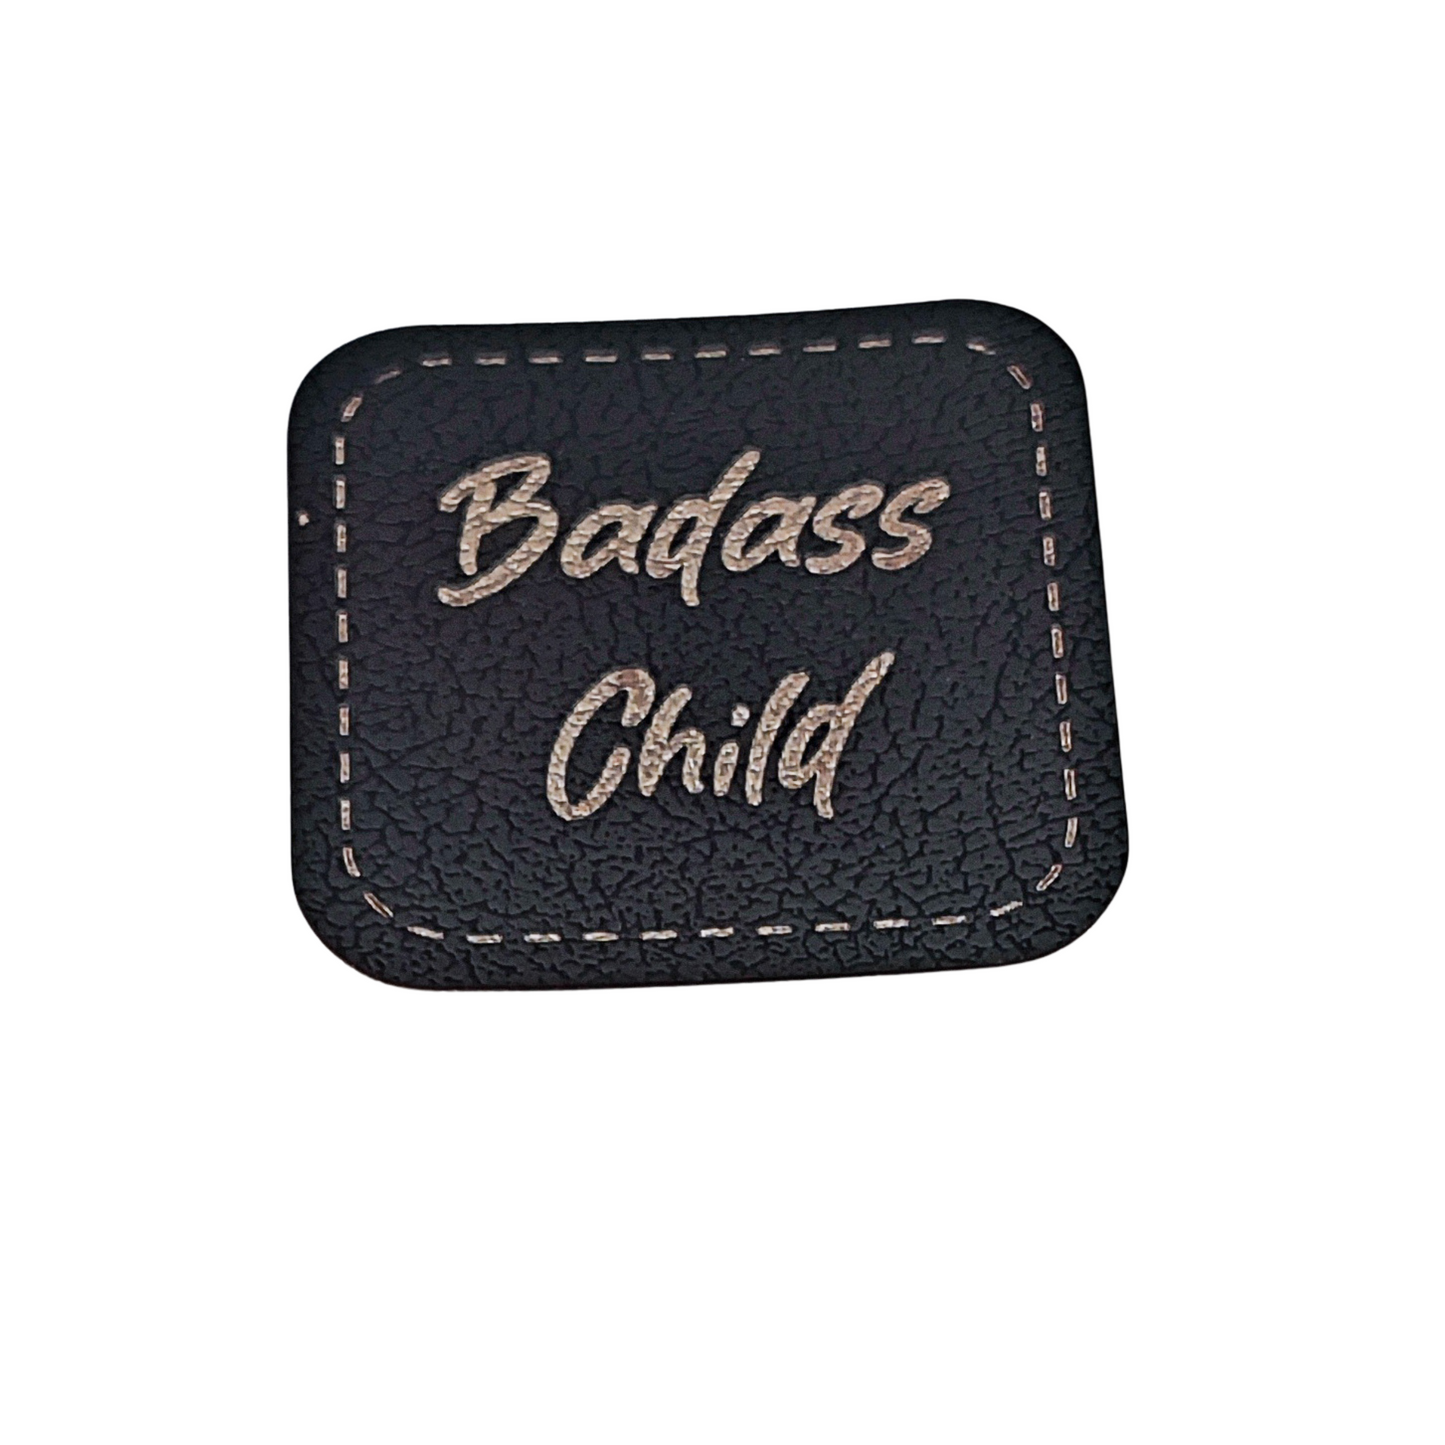 Aufnäher Label CRAZY "BADASS CHILD" schwarz aus Kunstleder